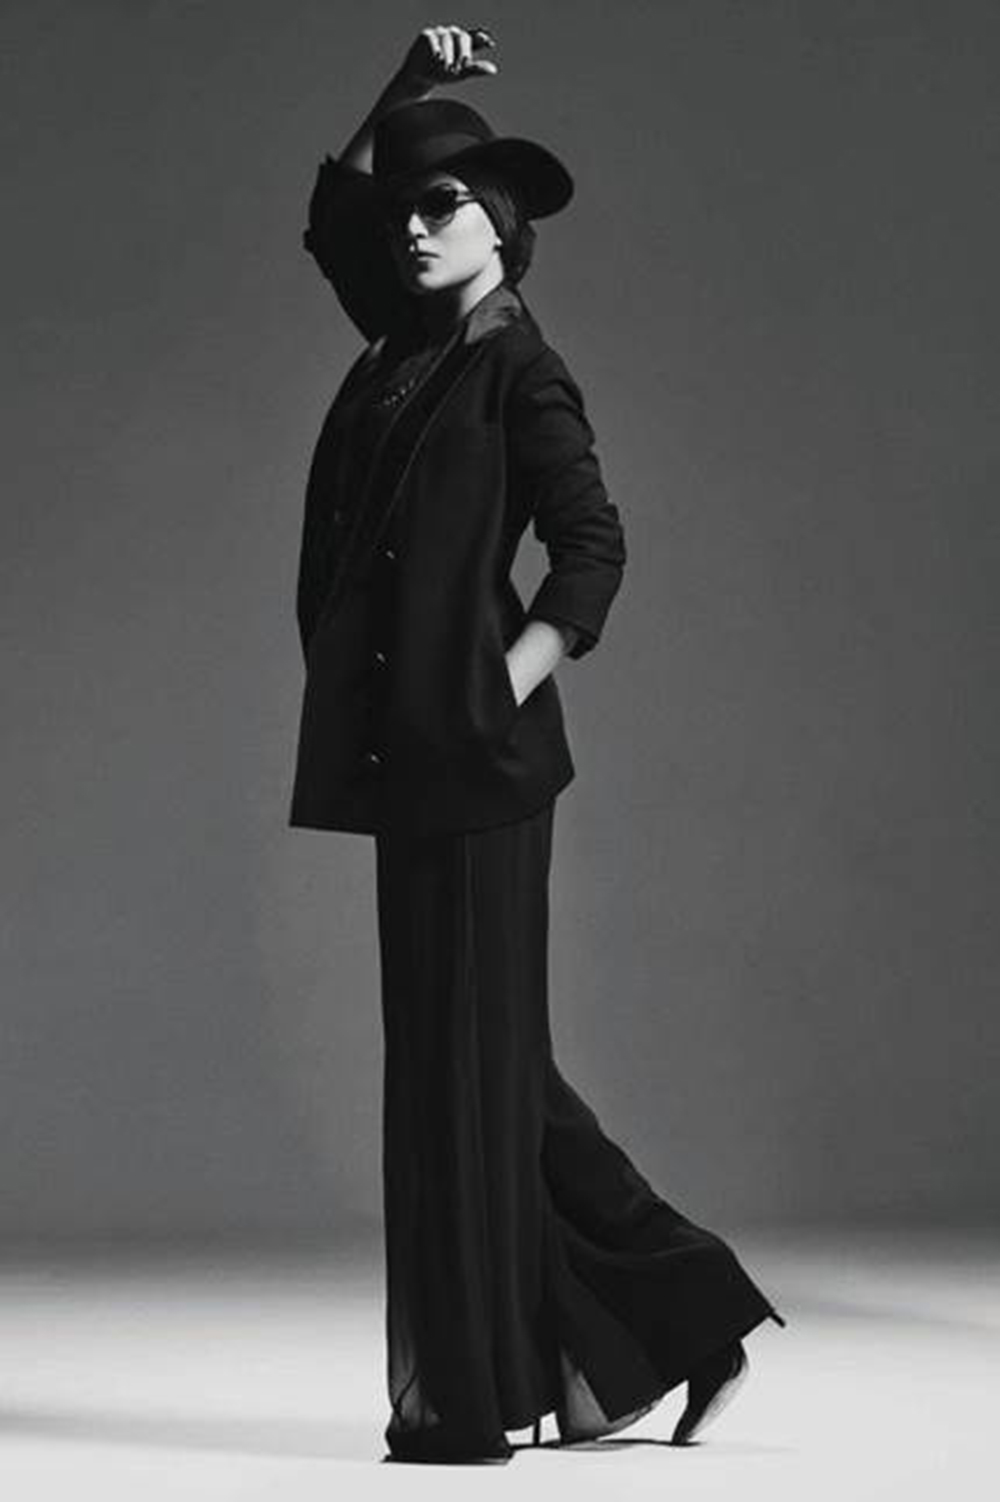 メロディ・ガルドー、来年2月9日に初のライヴ・アルバムをリリース